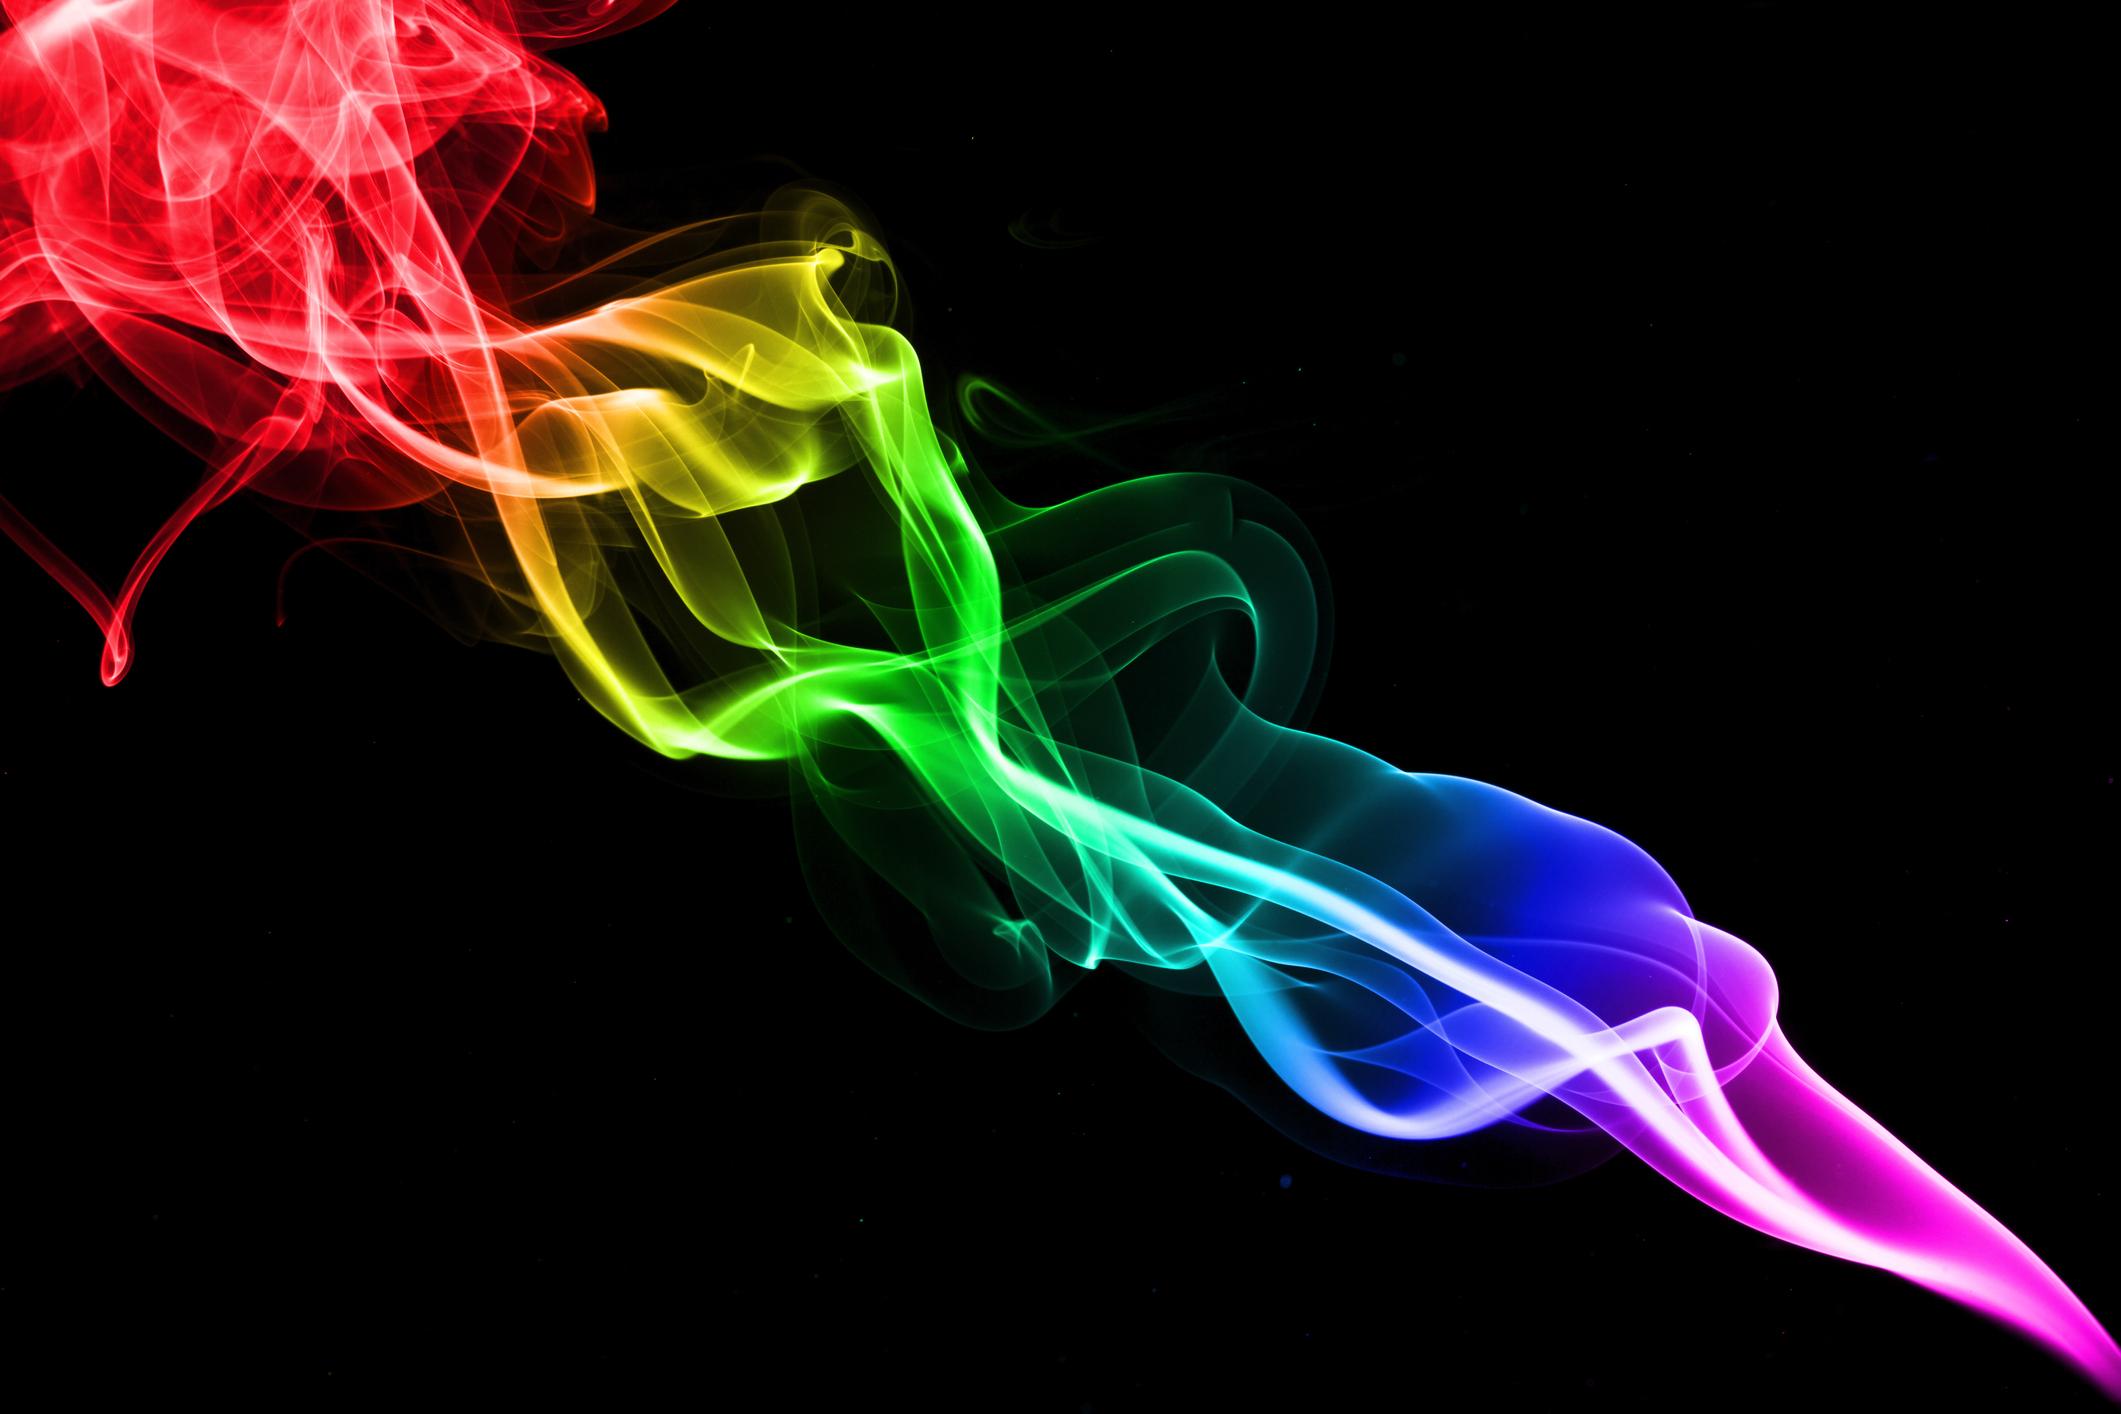 colored smoke